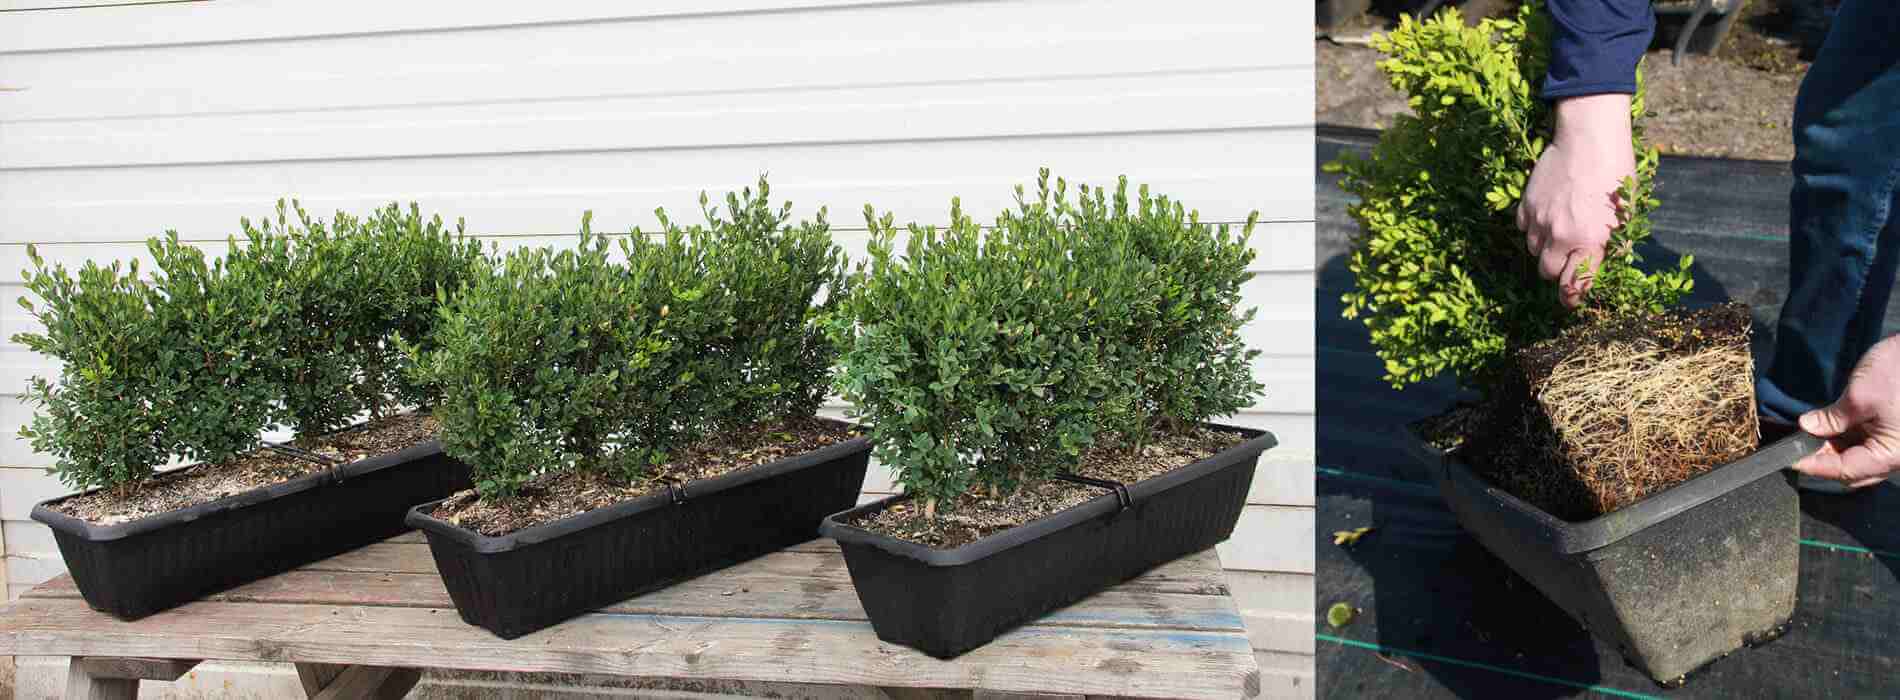 boxwood hedge plants (Buxus)